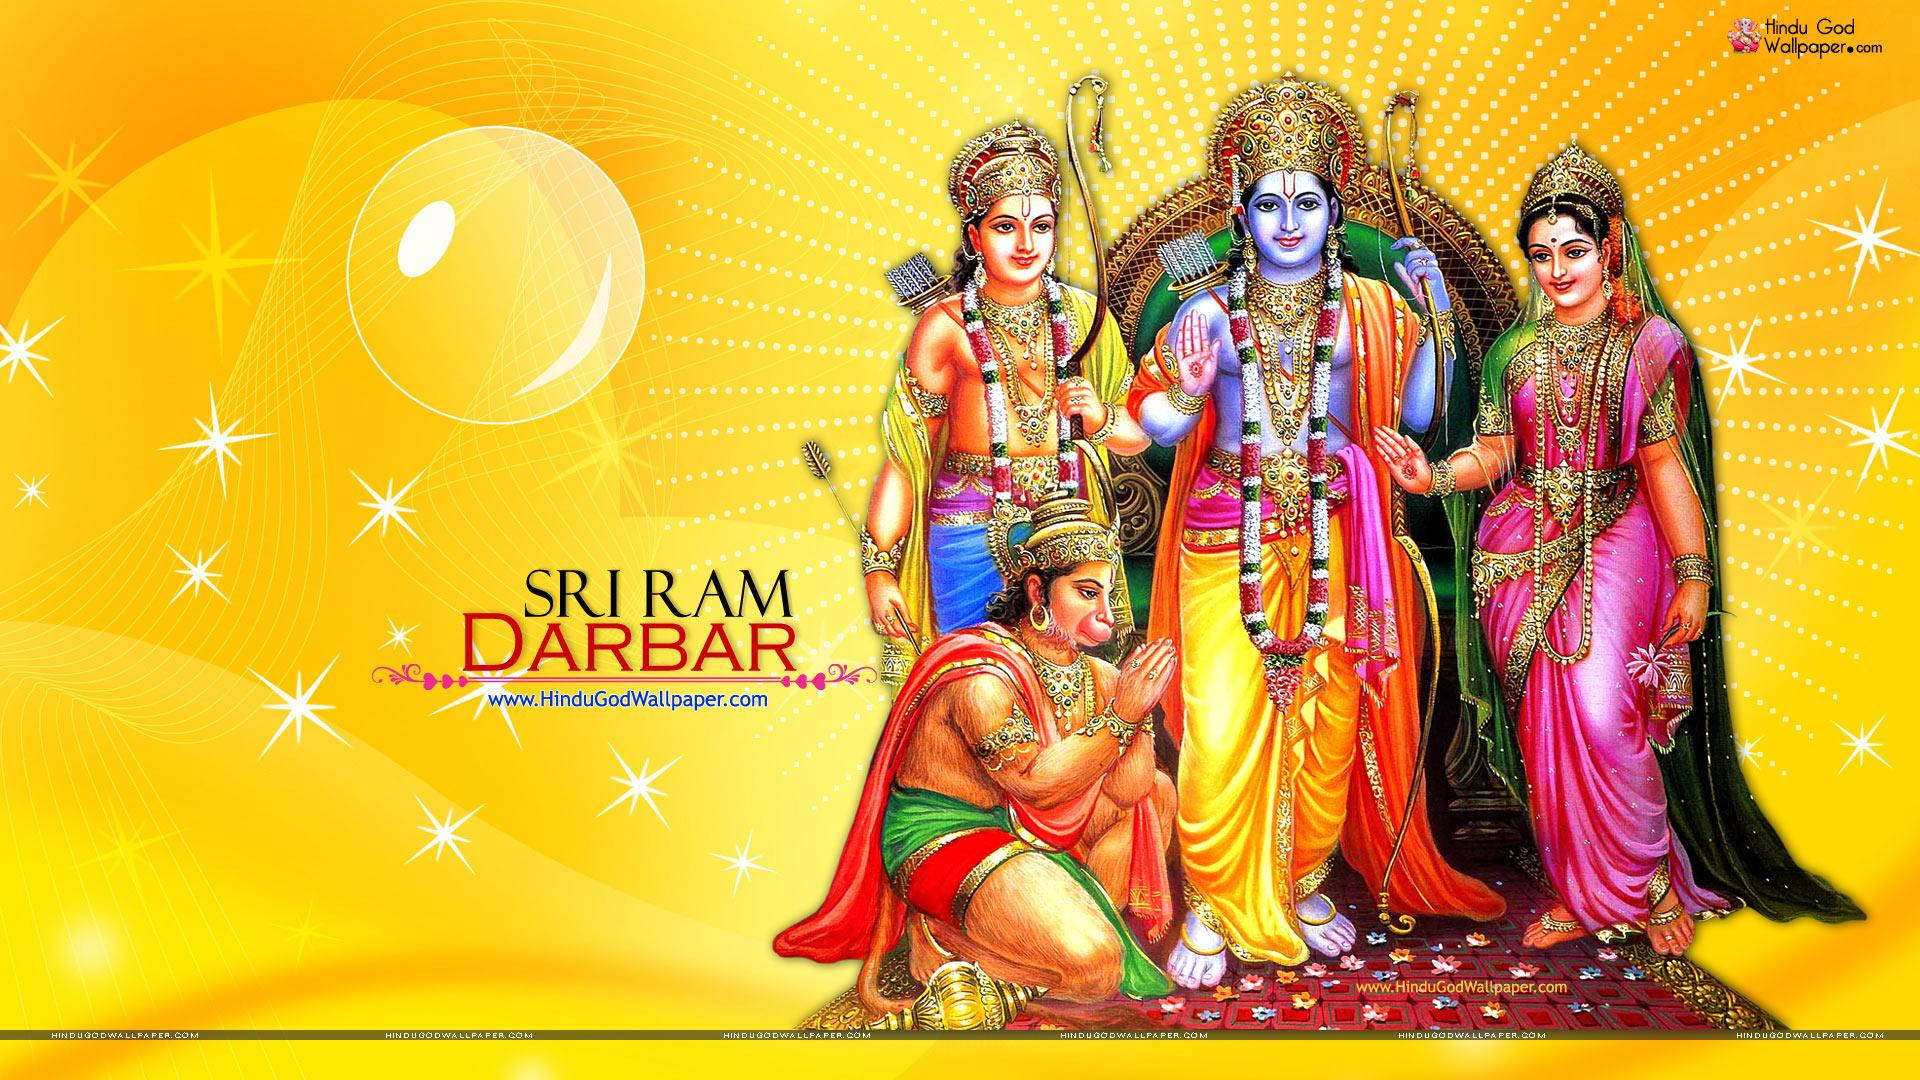 Sriram Darbar - Fondos De Pantalla Para Computadora O Teléfono Móvil. Fondo de pantalla